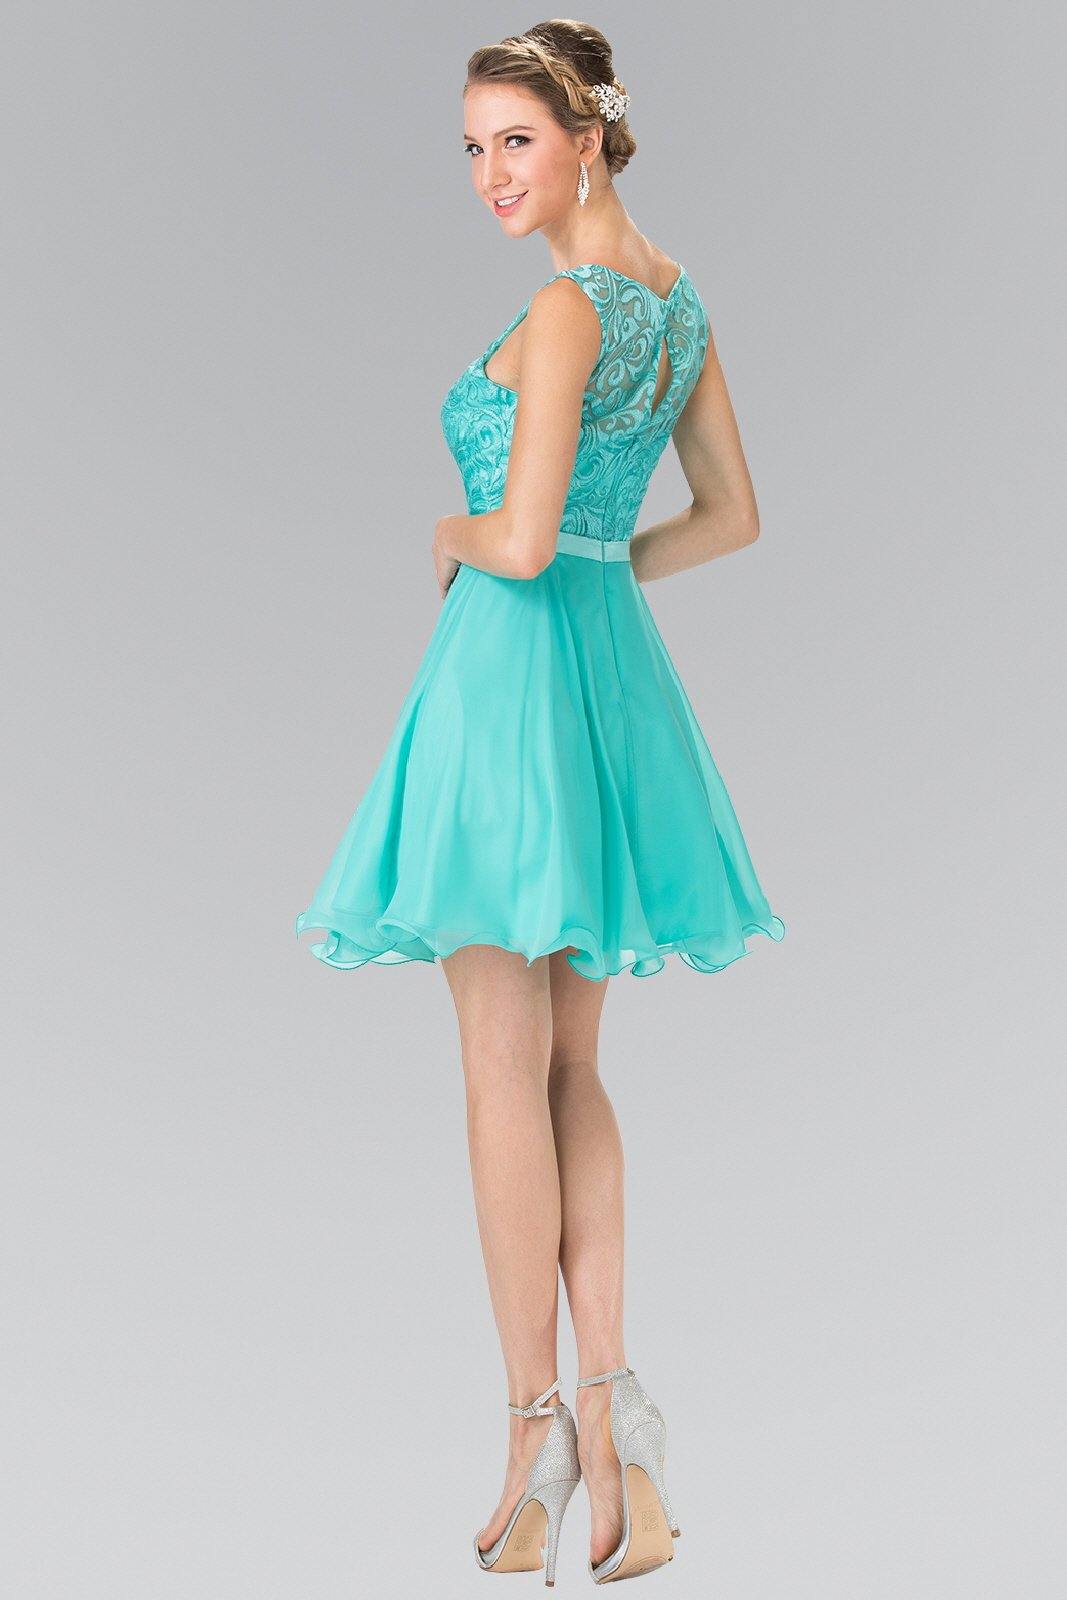 Lace Bodice A-Line Short Dress Cocktail - The Dress Outlet Elizabeth K